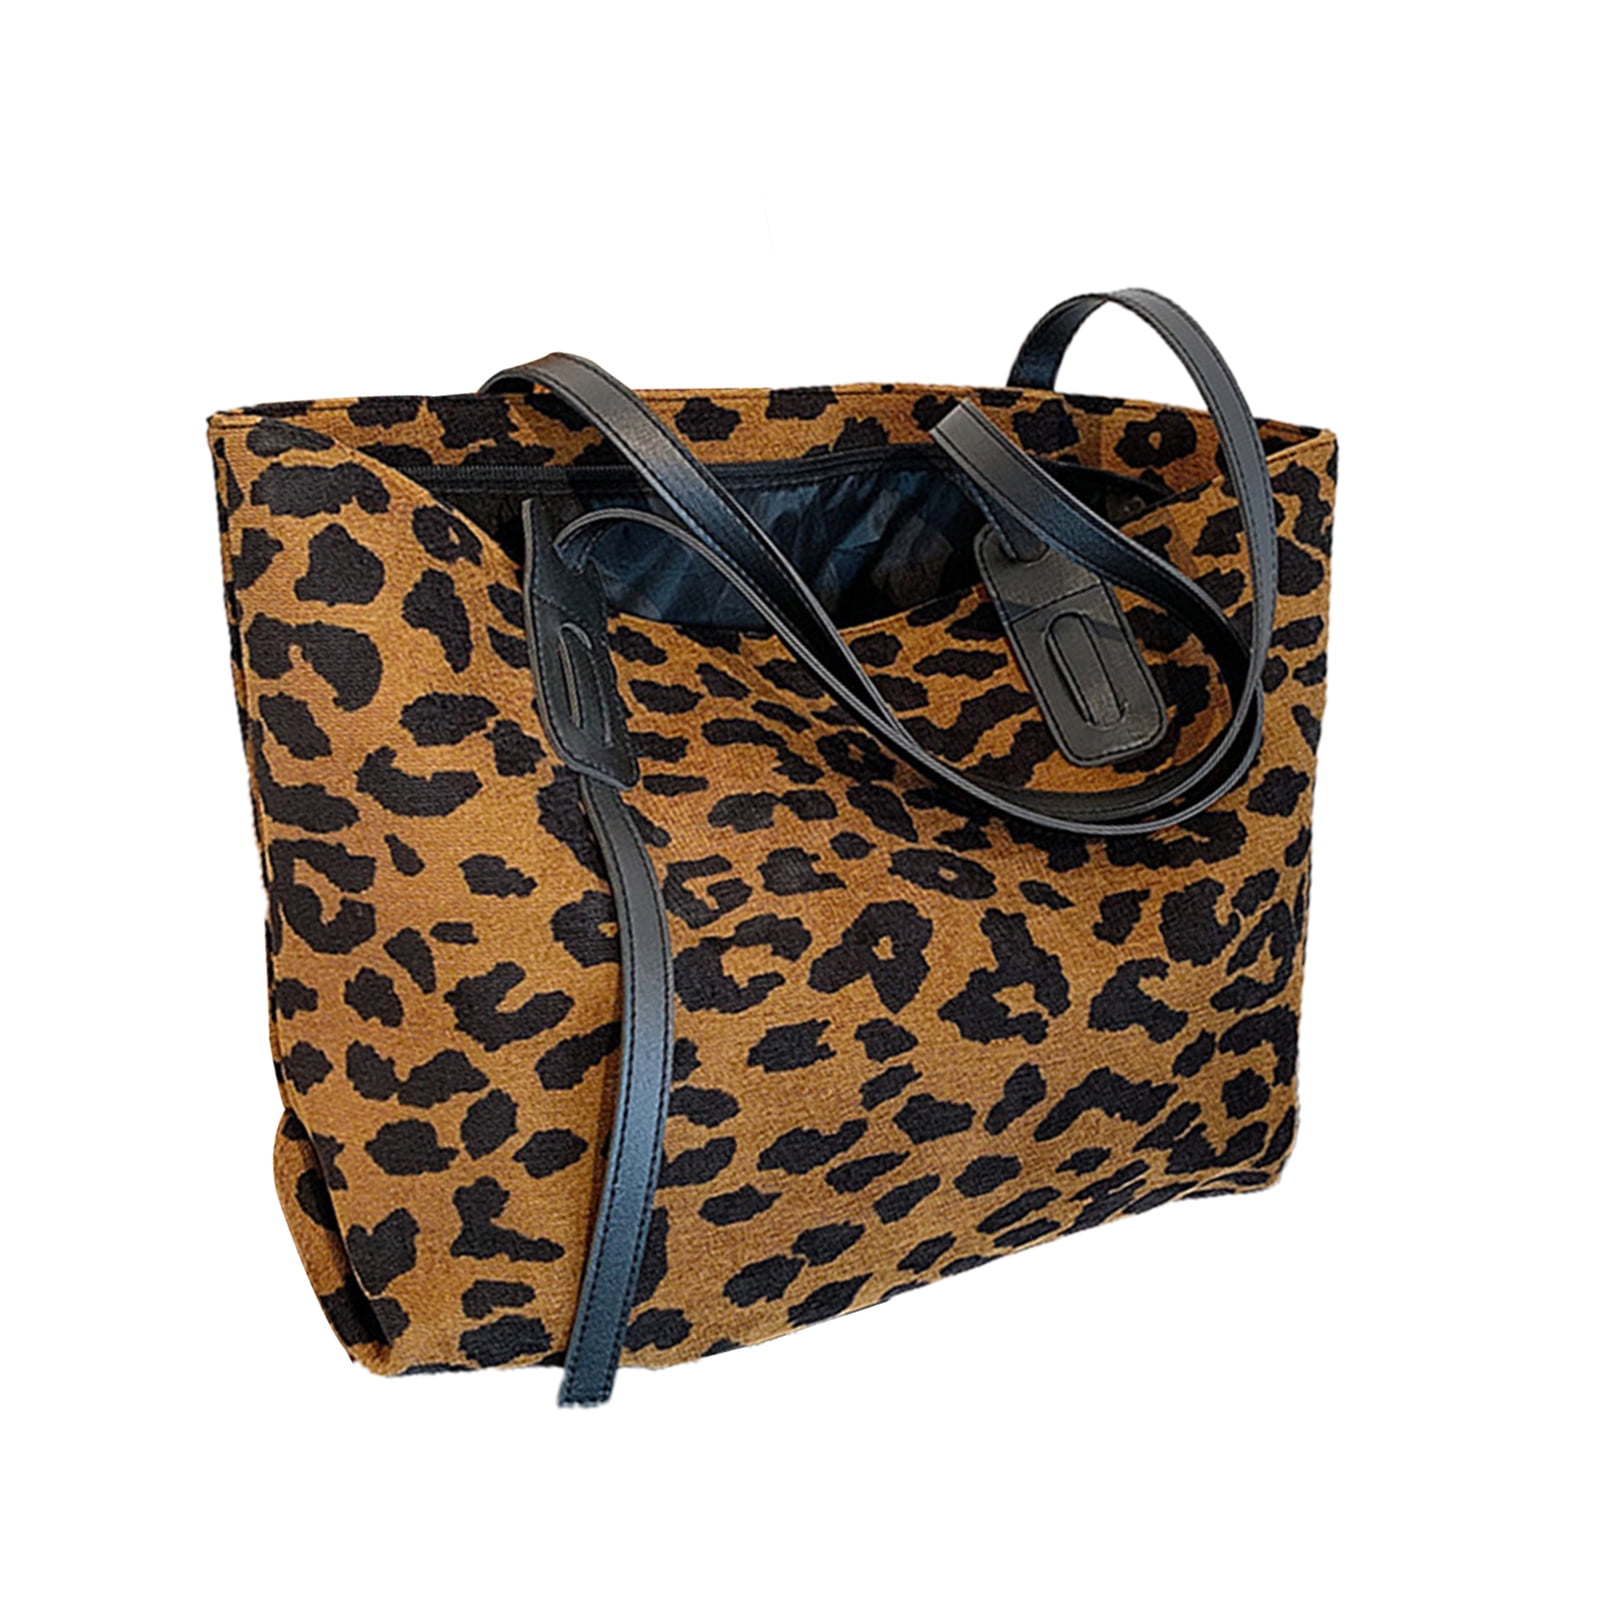 Leopard Print Real Leather Single Shoulder Bag Tote Bag Handbag Large Purse 